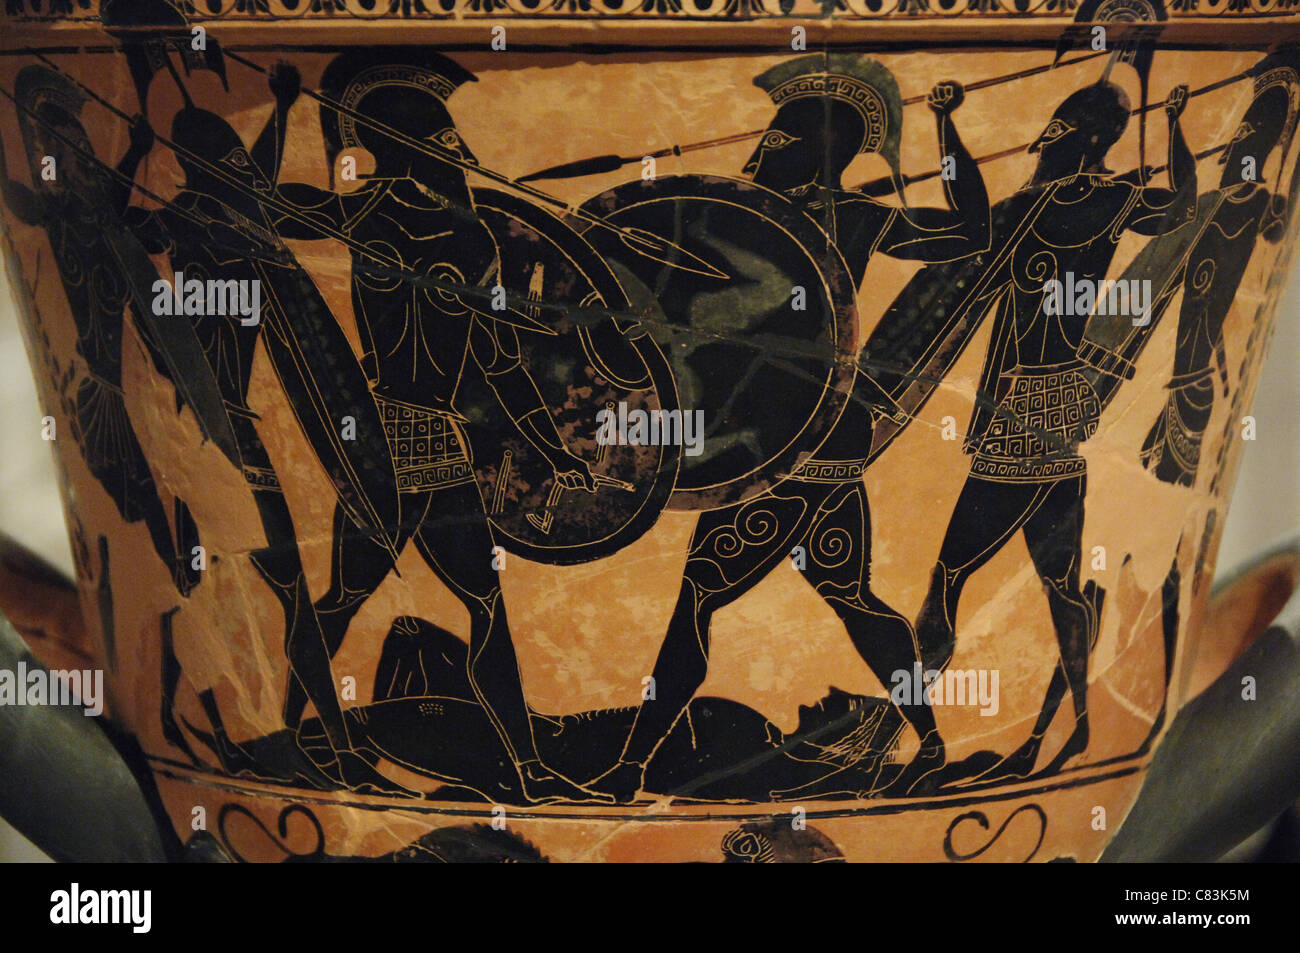 L'art grec cratère attique peint avec des chiffres noirs représentant une bataille homérique autour du cadavre d'un guerrier. Banque D'Images